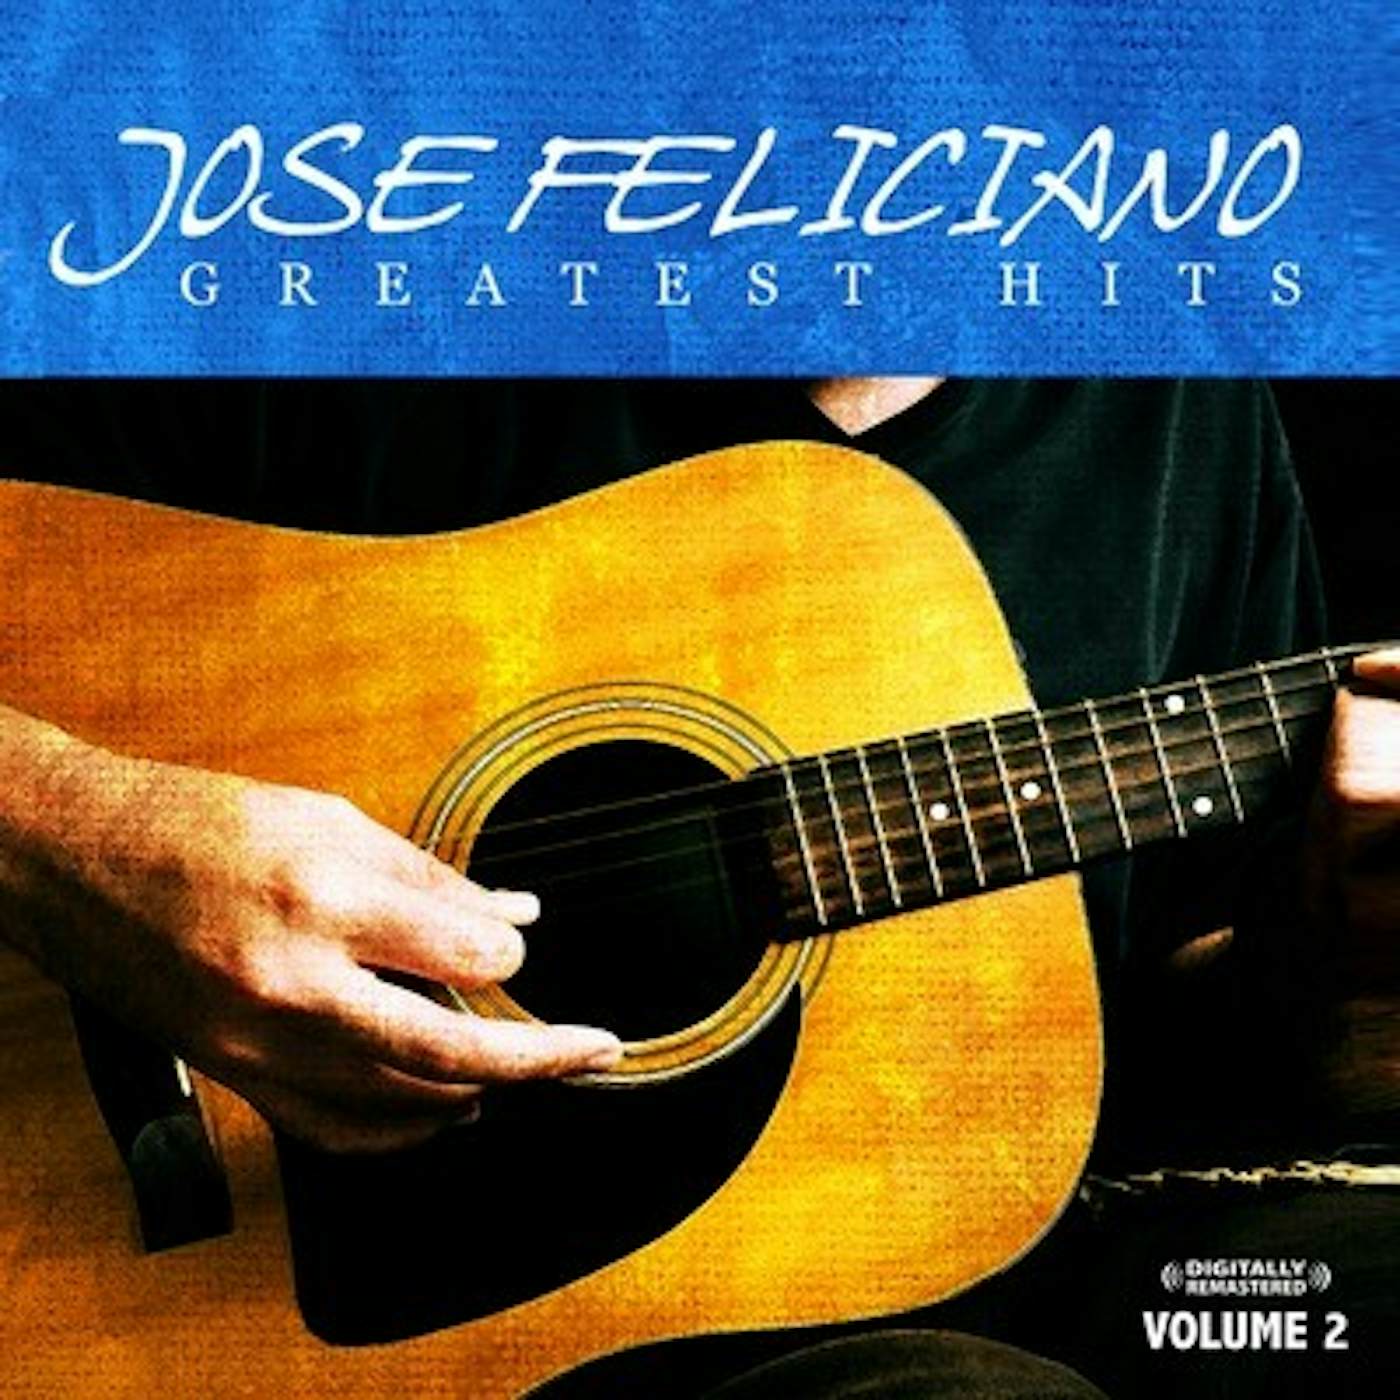 José Feliciano Greatest Hits Vol. 2 CD